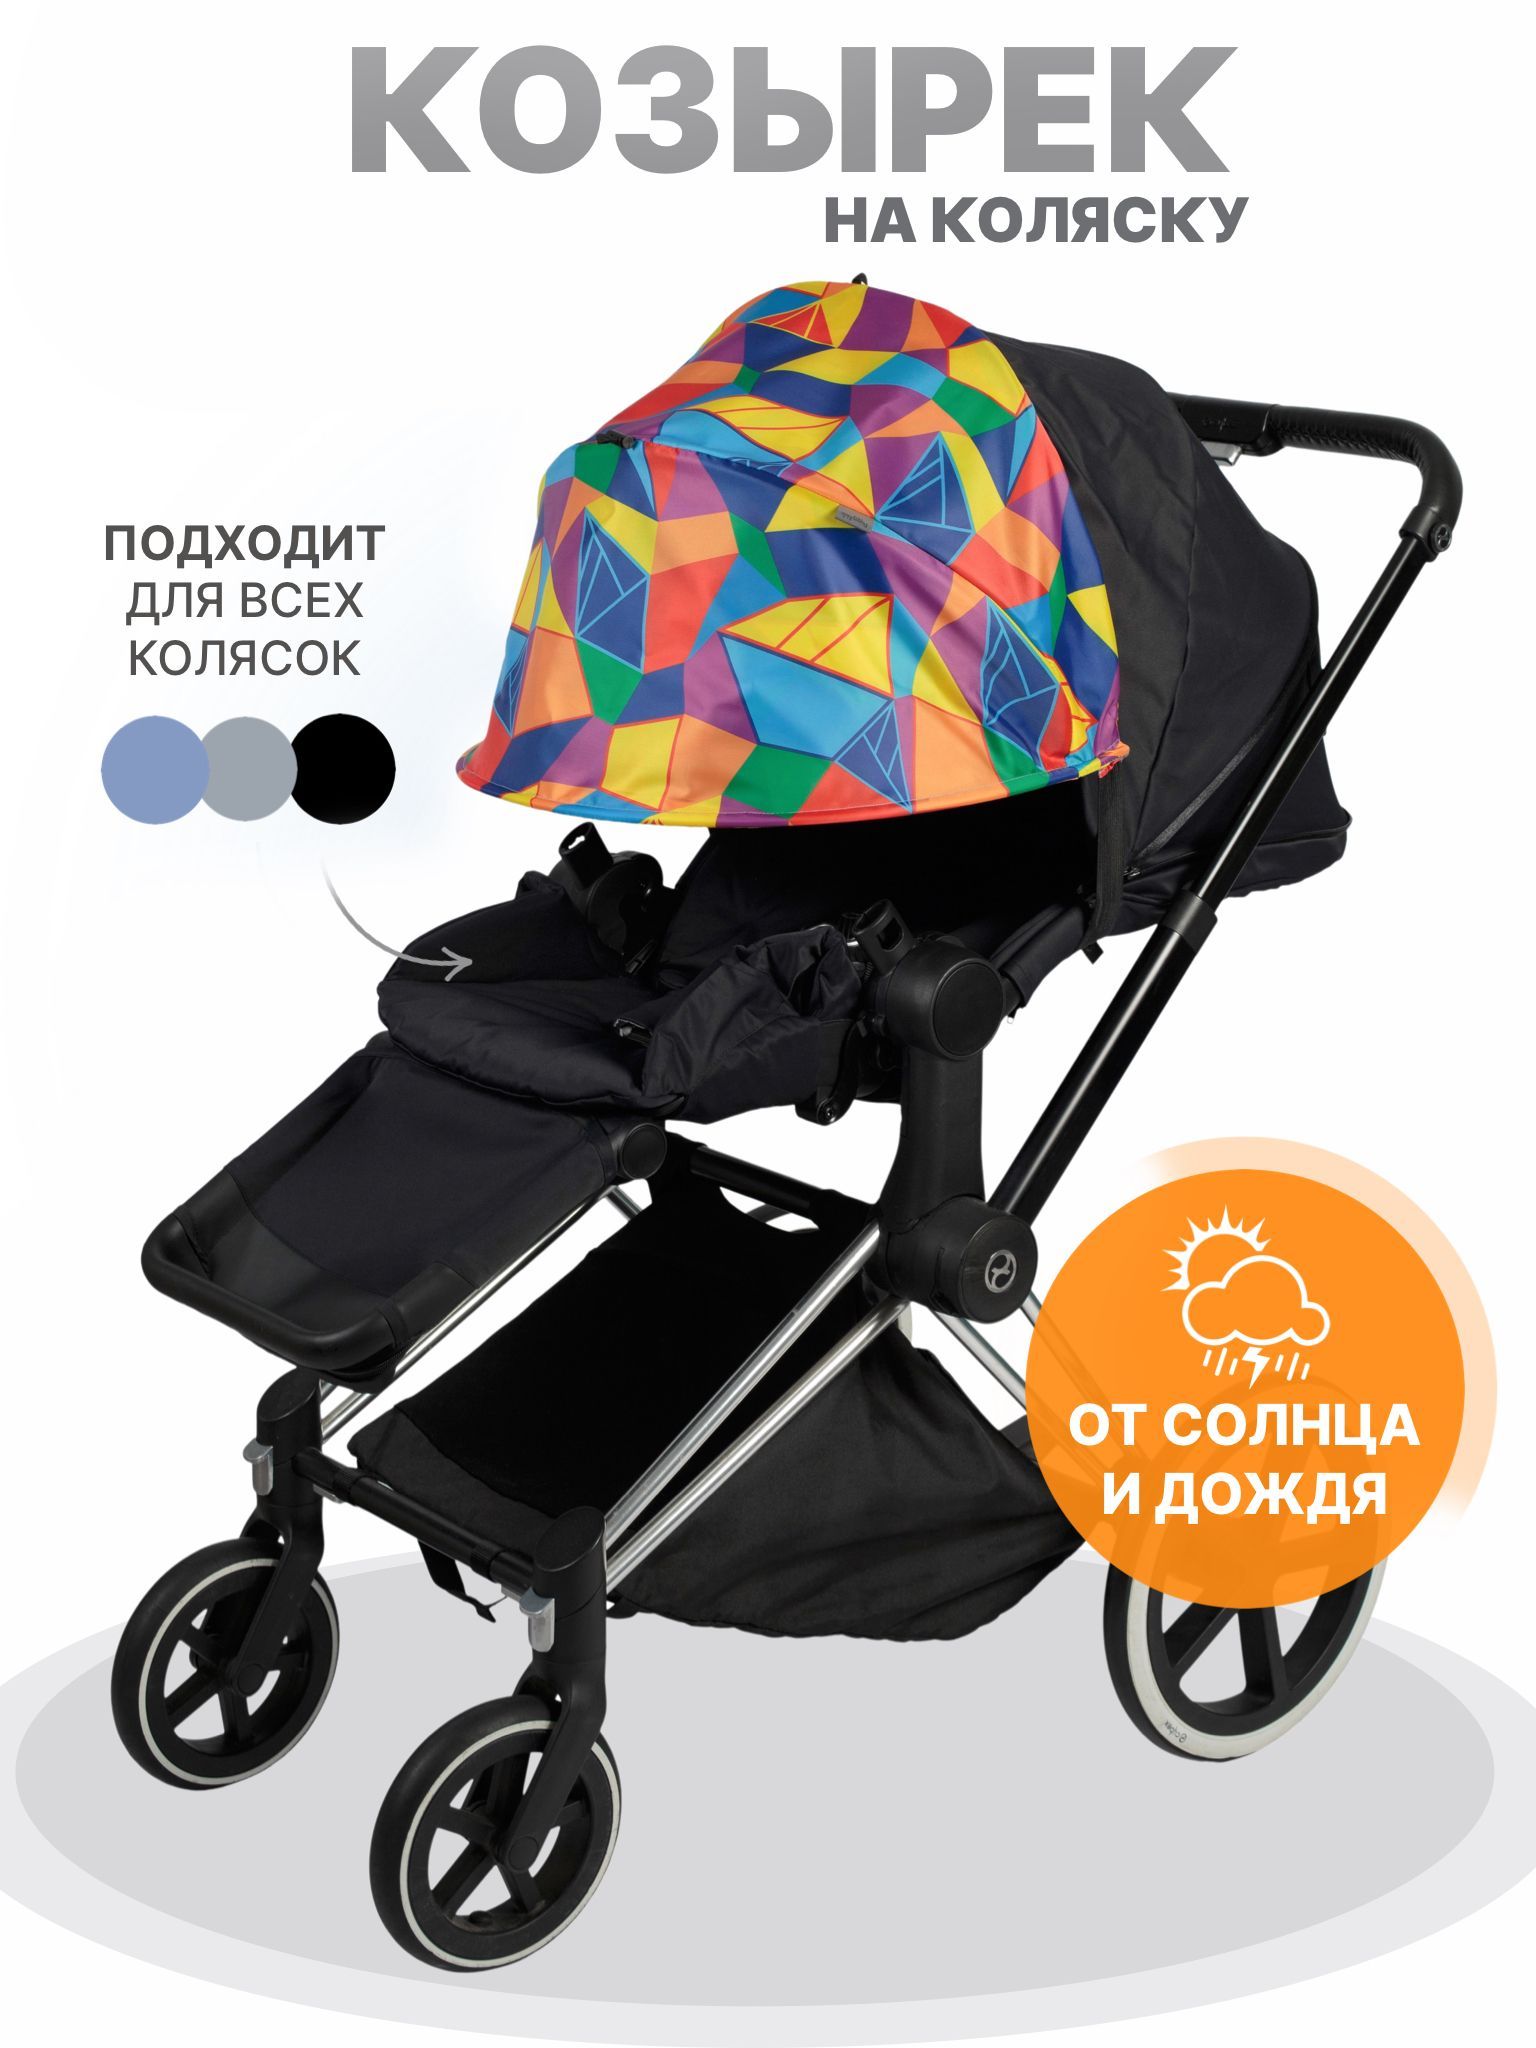 Широкий ассортимент зонтов, козырьков на детские коляски в СПб | Магазин для новорожденных Piccolo